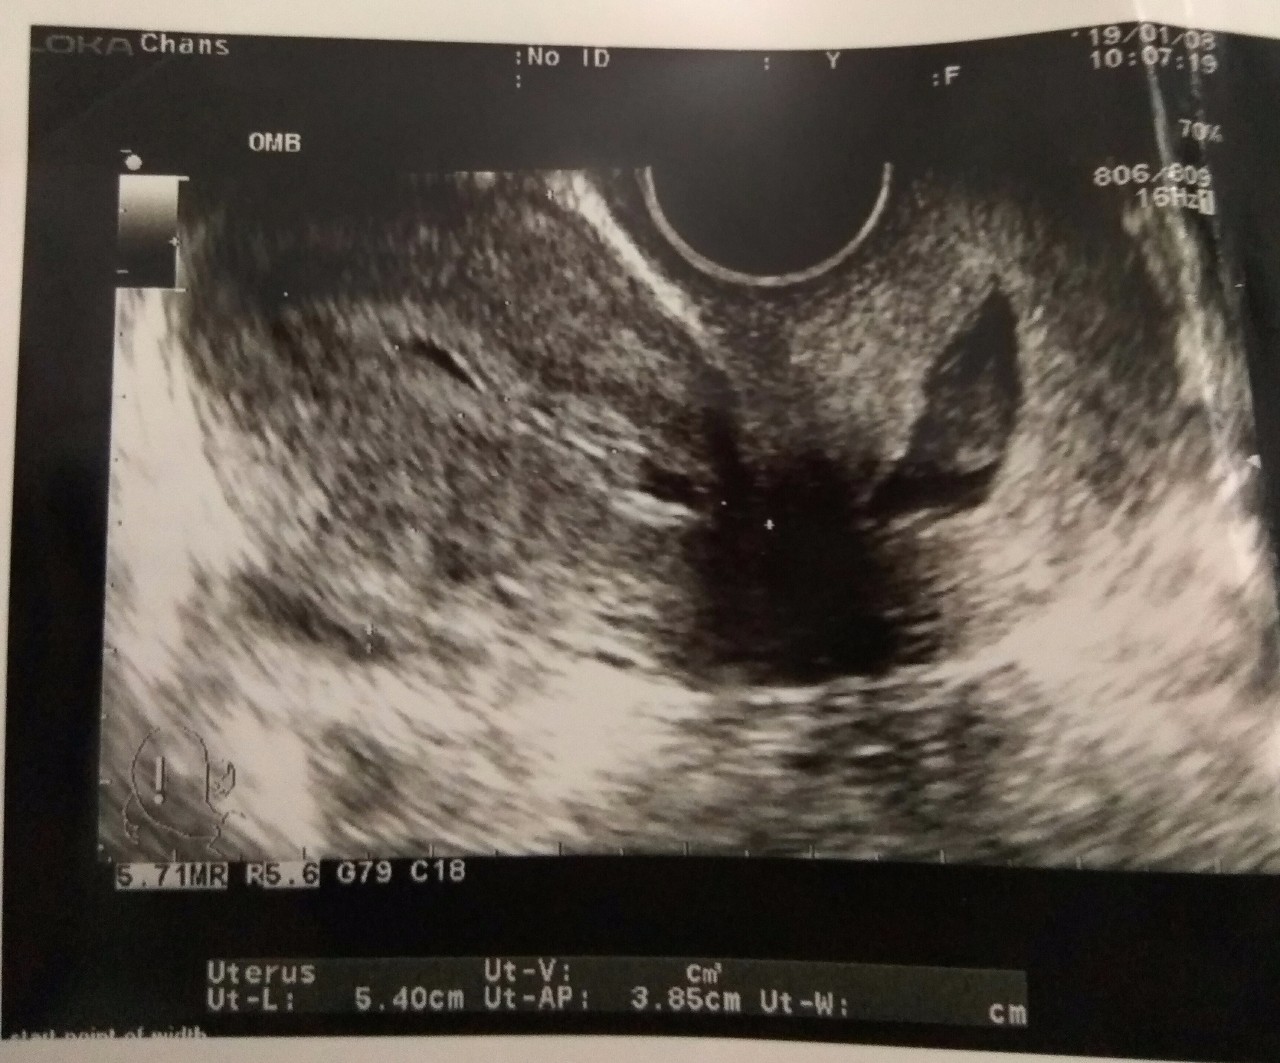 Фото на ранних сроках беременности фото 2 недели